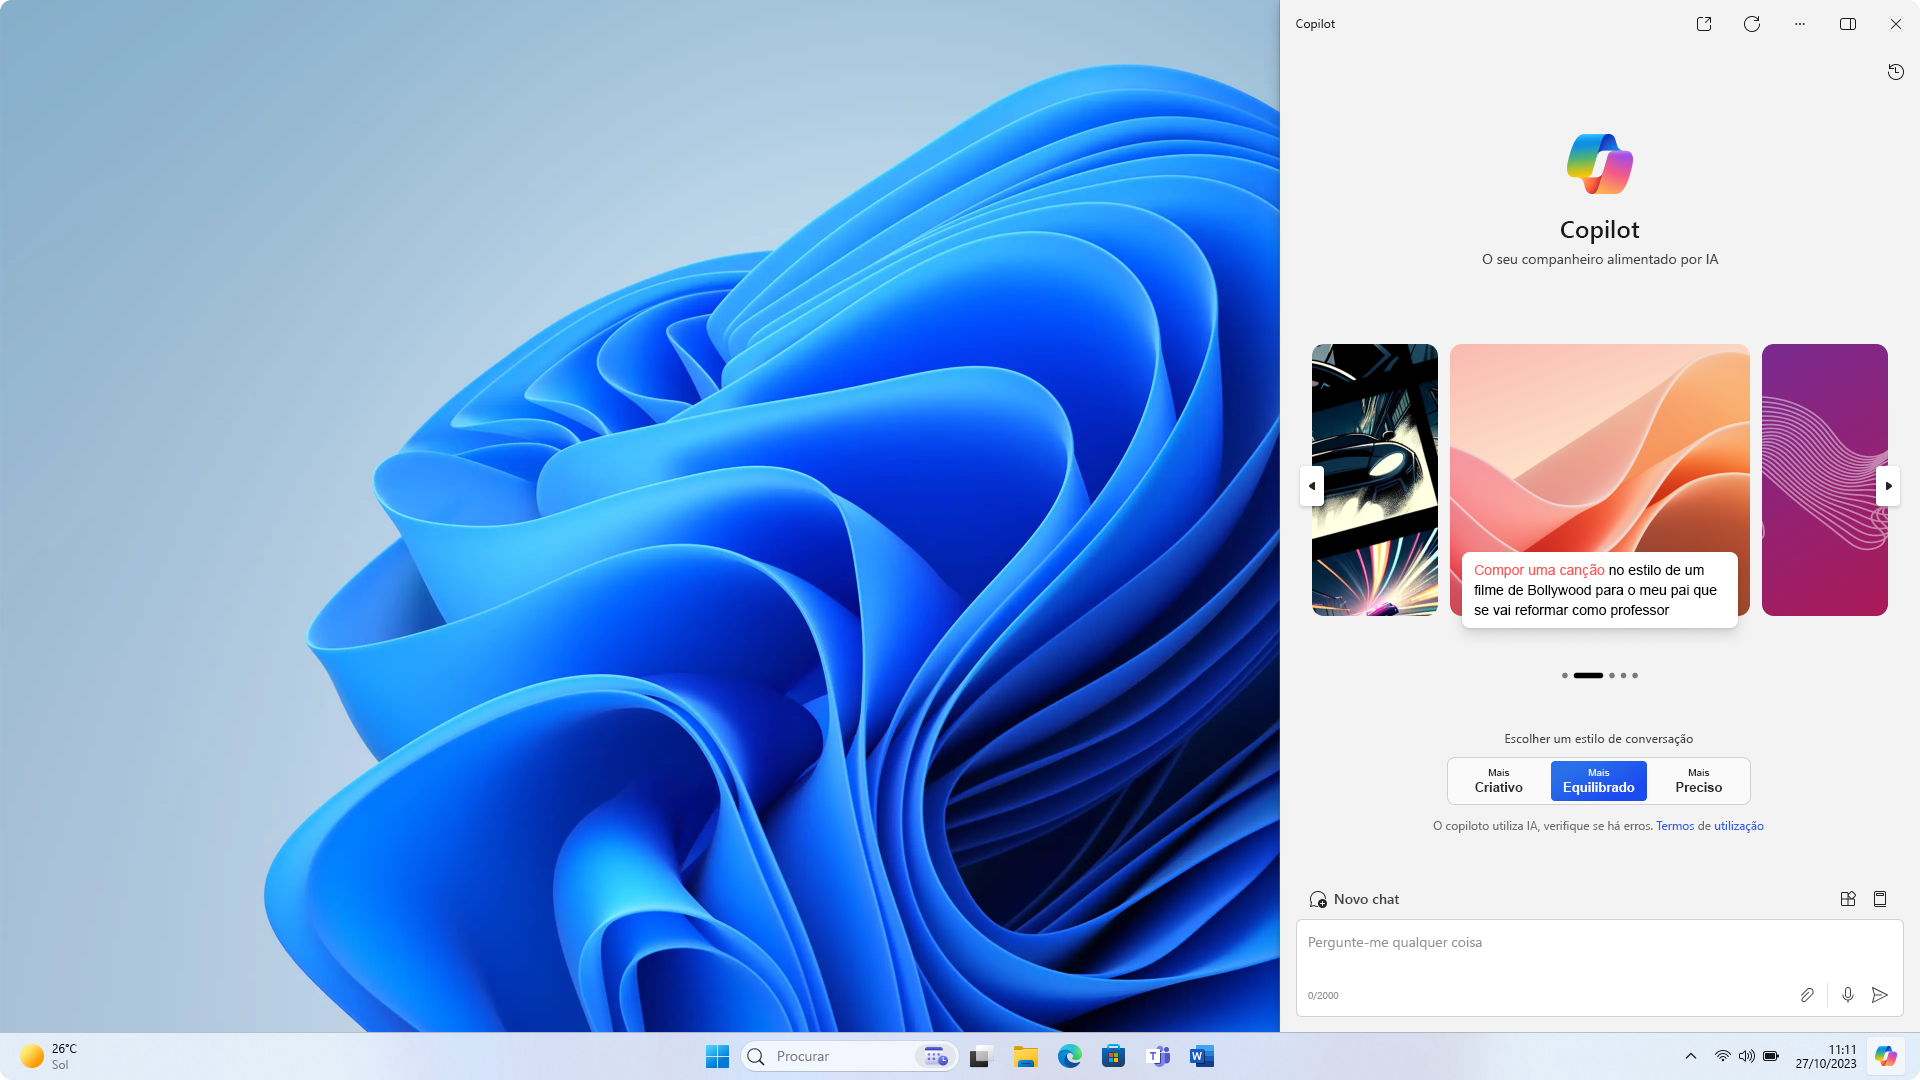 Captura de ecrã do ambiente de trabalho do Windows utilizando o tema claro com a aplicação Copilot no Windows apresentada, que corresponde ao tema.